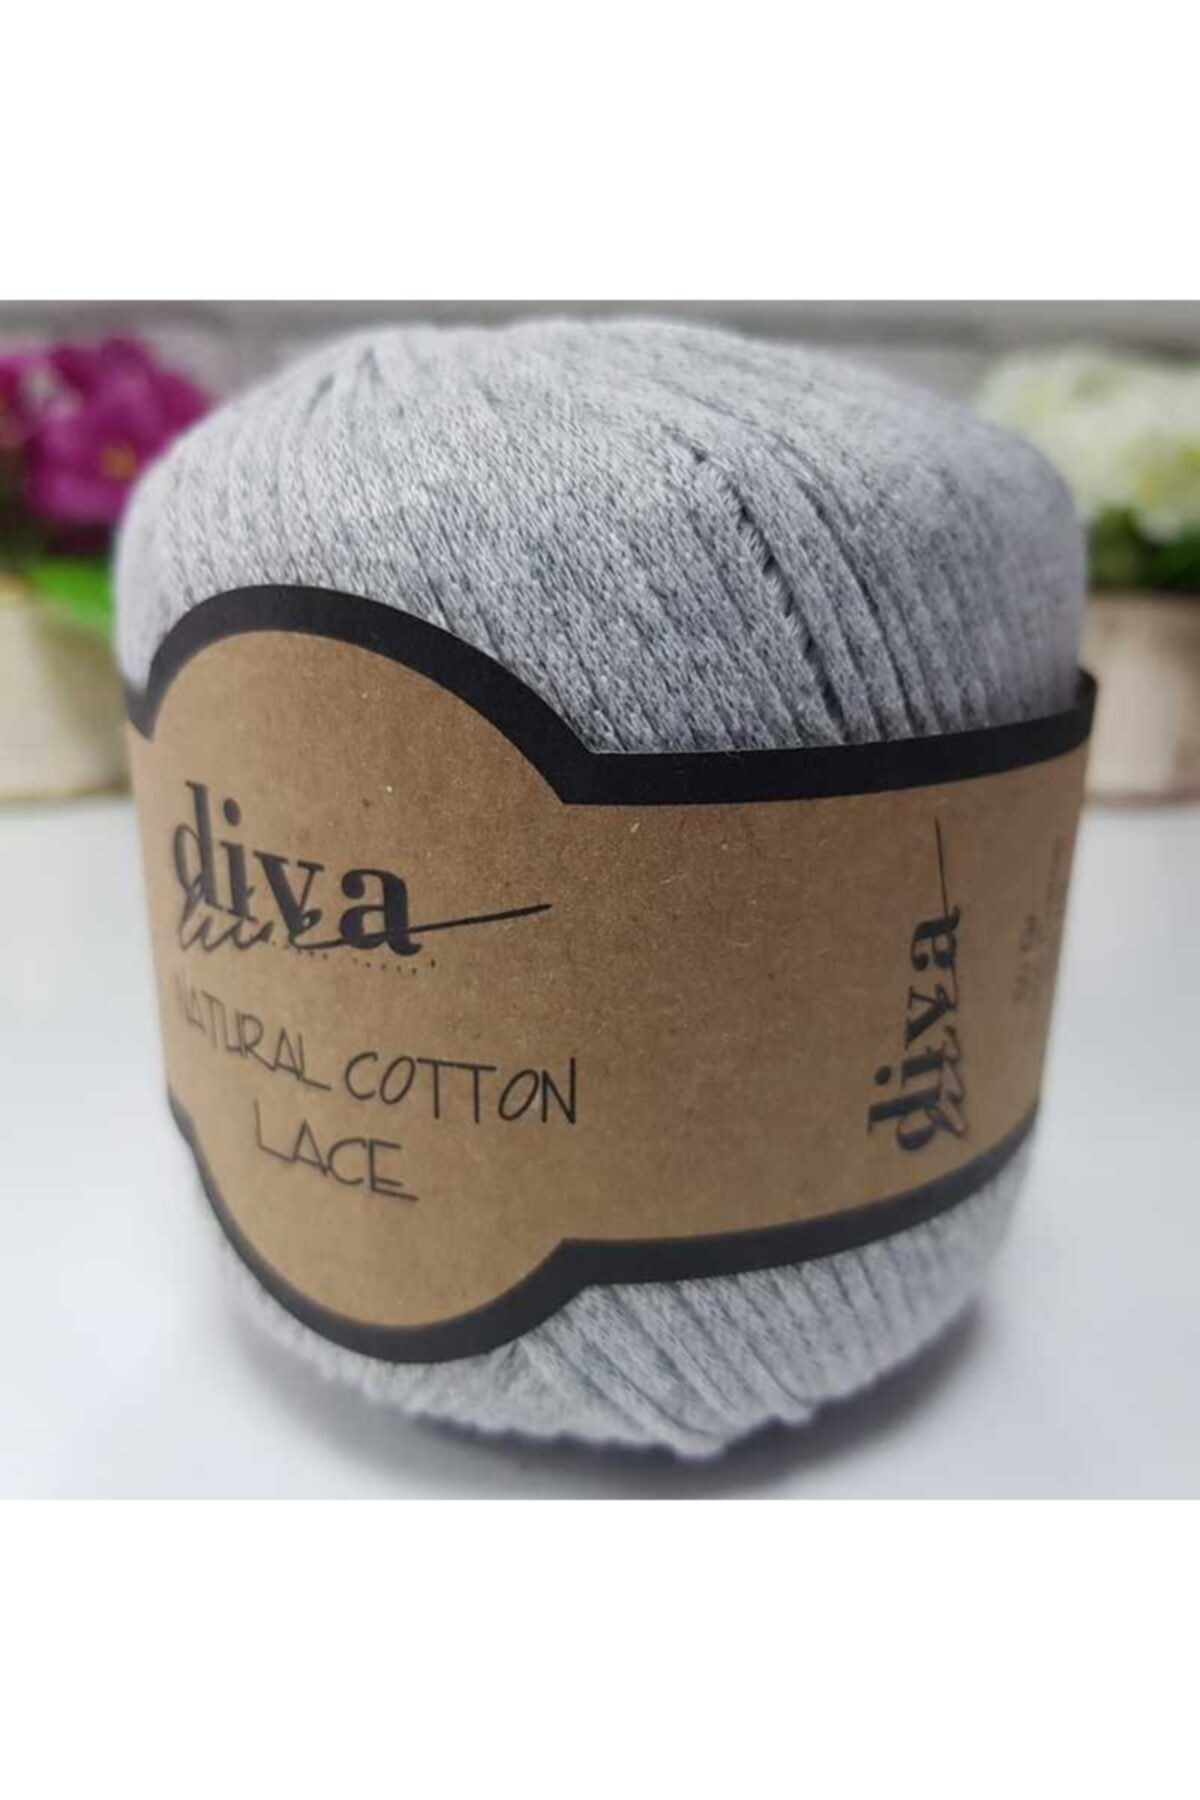 Diva İplik Diva Natural Cotton Lace Lase Ipi 2107 Açık Gri